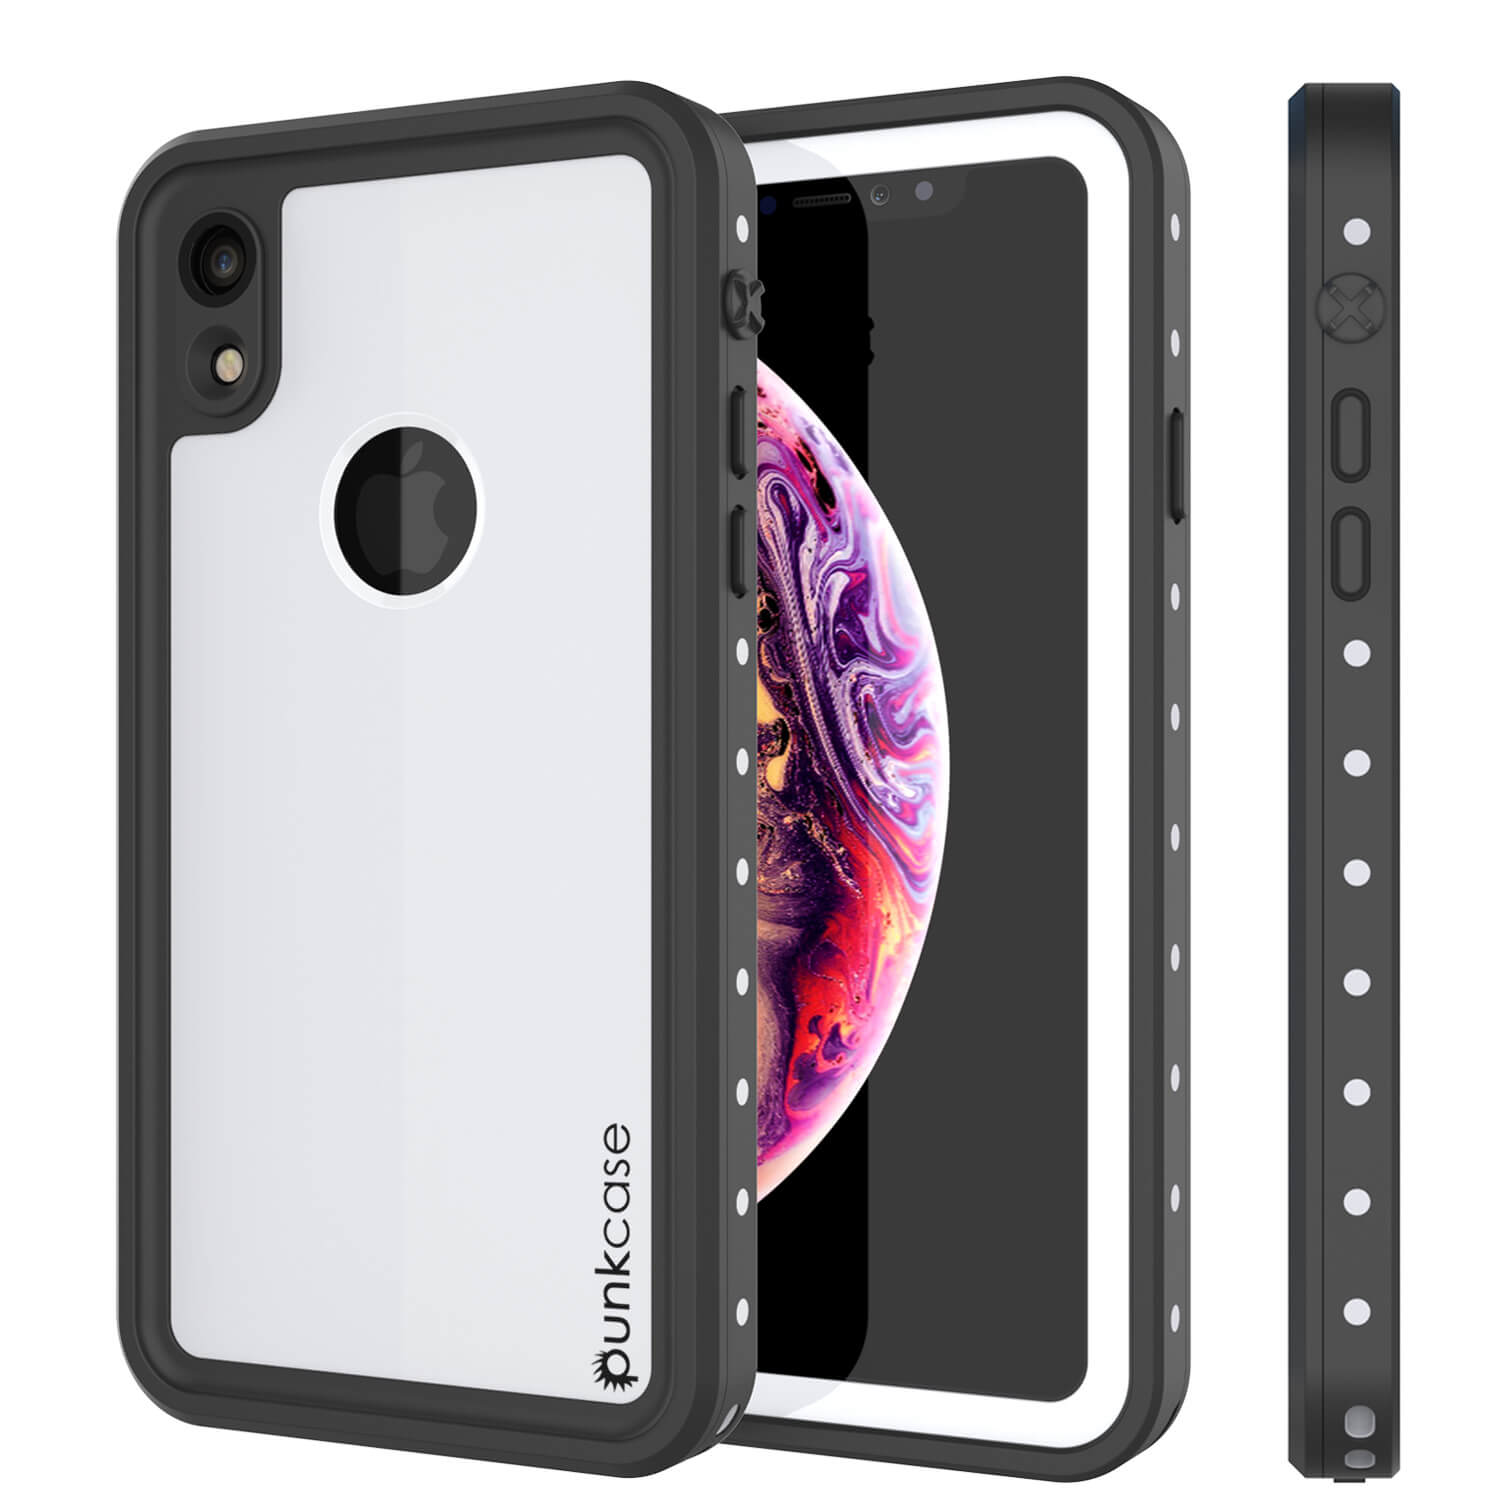 iPhone XR Waterproof IP68 Case, Punkcase [White] [StudStar Series] [Slim Fit] [Dirtproof] (Color in image: white)